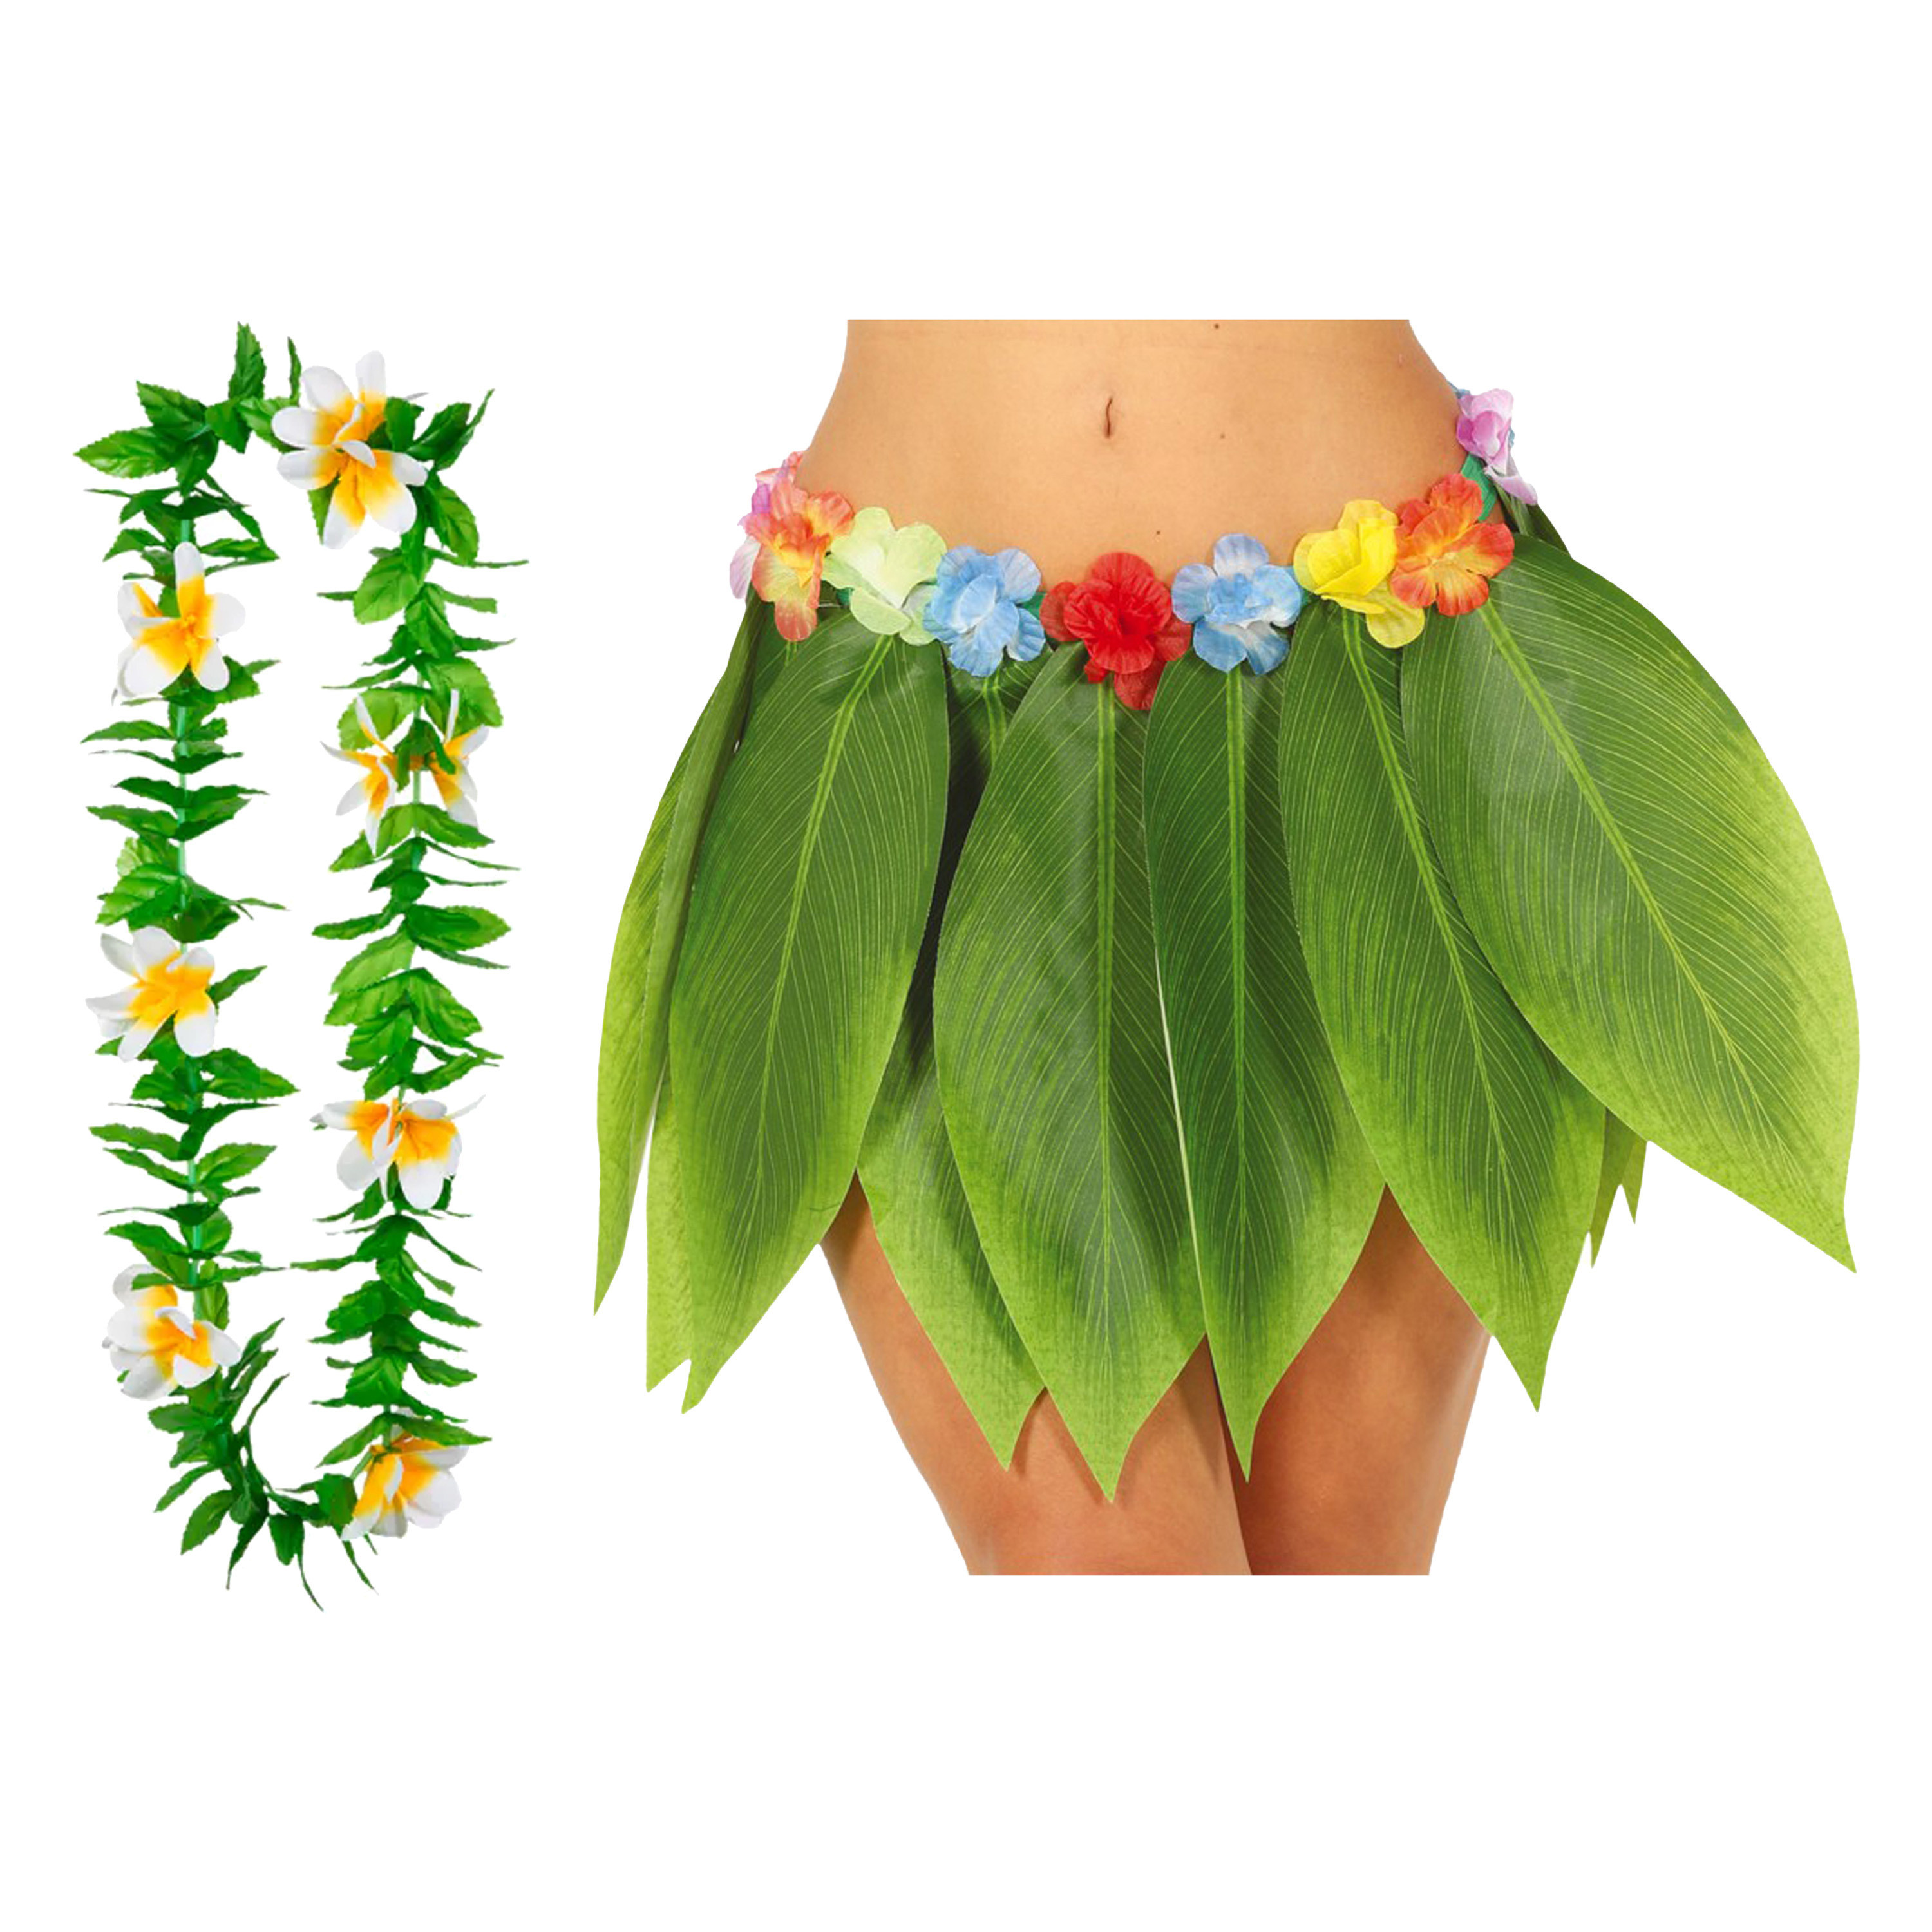 Toppers - Hawaii verkleed hoela rokje en bloemenkrans - volwassenen - groen - tropisch themafeest - hoela